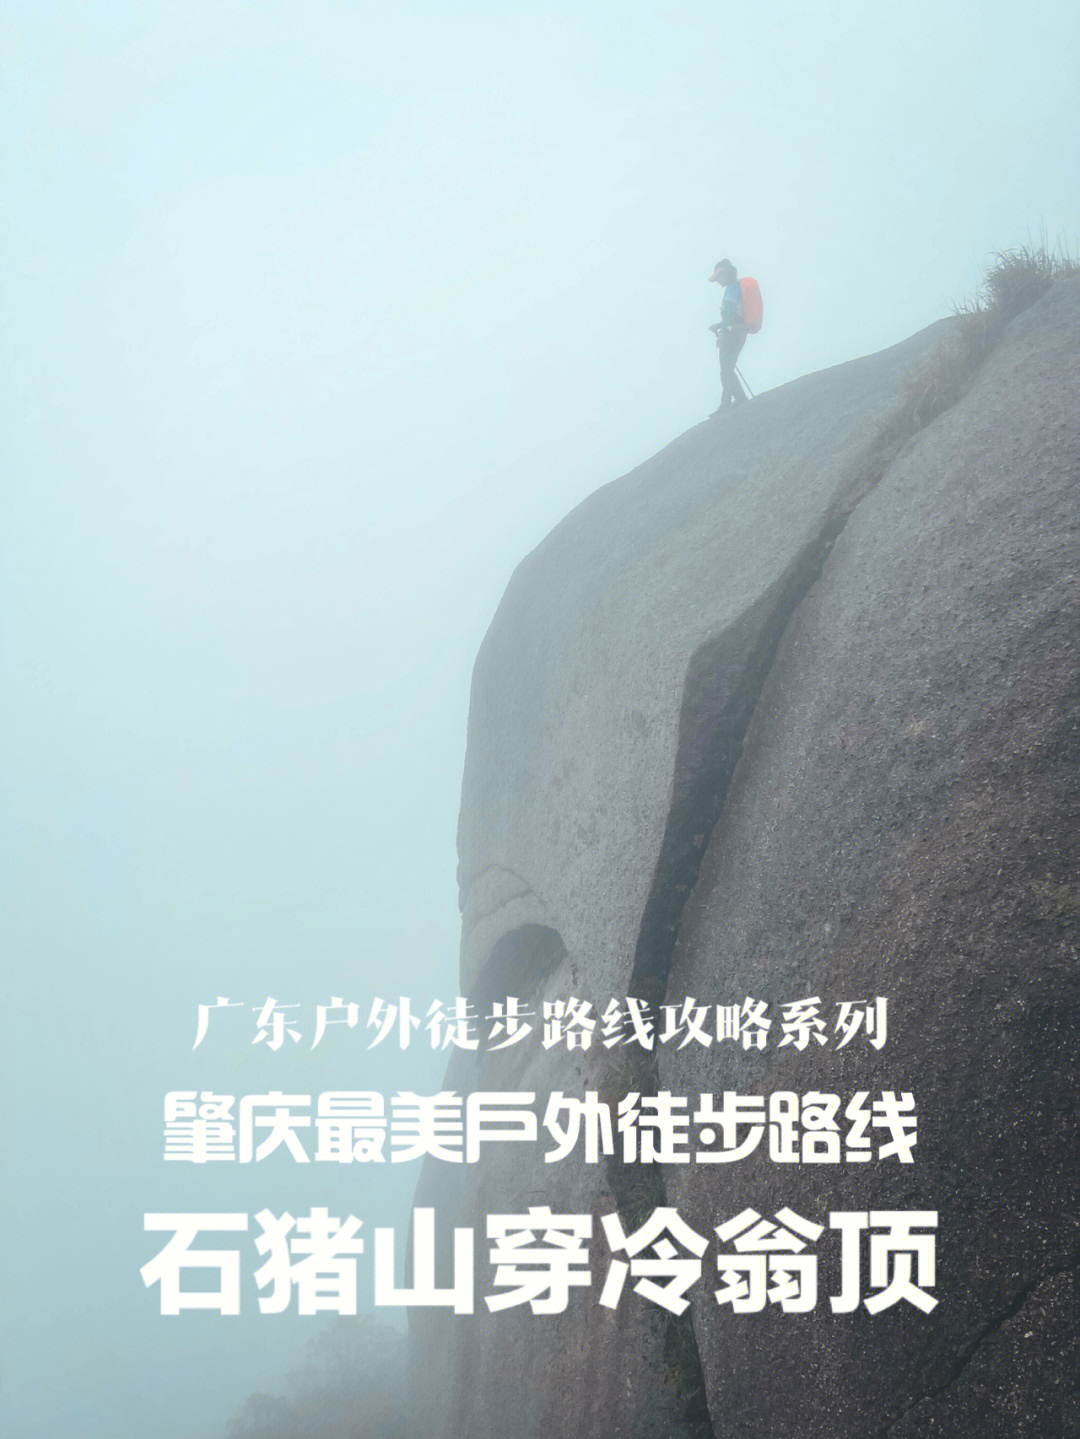 石猪山位于肇庆市怀集县凤岗镇上磴村,最高海拔1352多米,是肇庆地区最